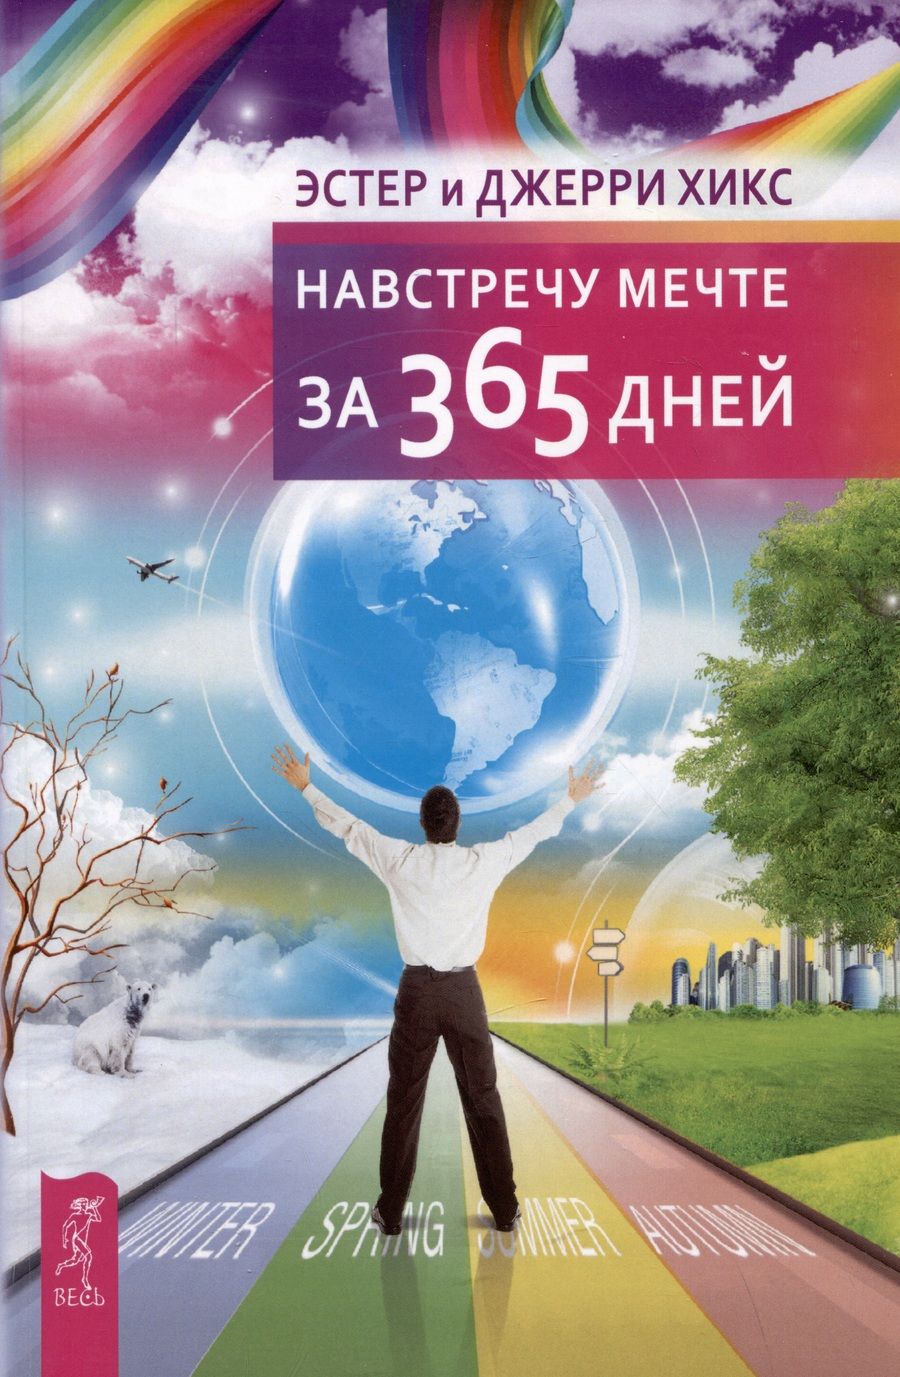 Обложка книги "Хикс, Хикс: Навстречу мечте за 365 дней"